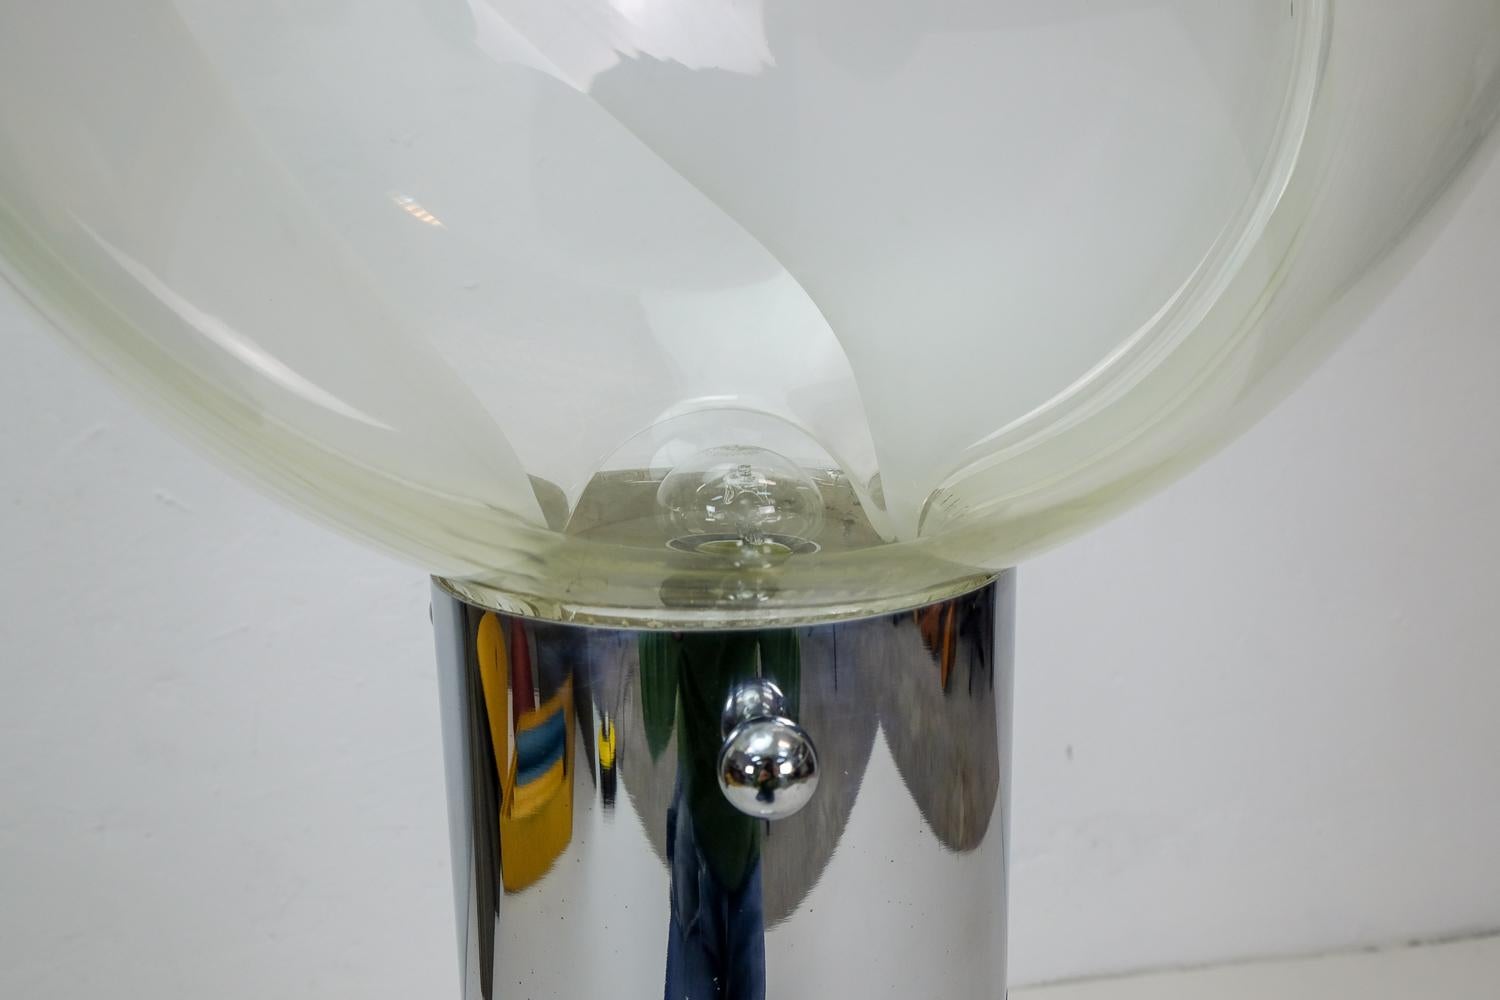 Une lampe produite par la société italienne d'éclairage Venini, design Toni Zuccheri.

Ce lampadaire possède deux sources lumineuses qui peuvent être contrôlées individuellement avec l'interrupteur externe d'origine. L'ampoule en verre repose sur